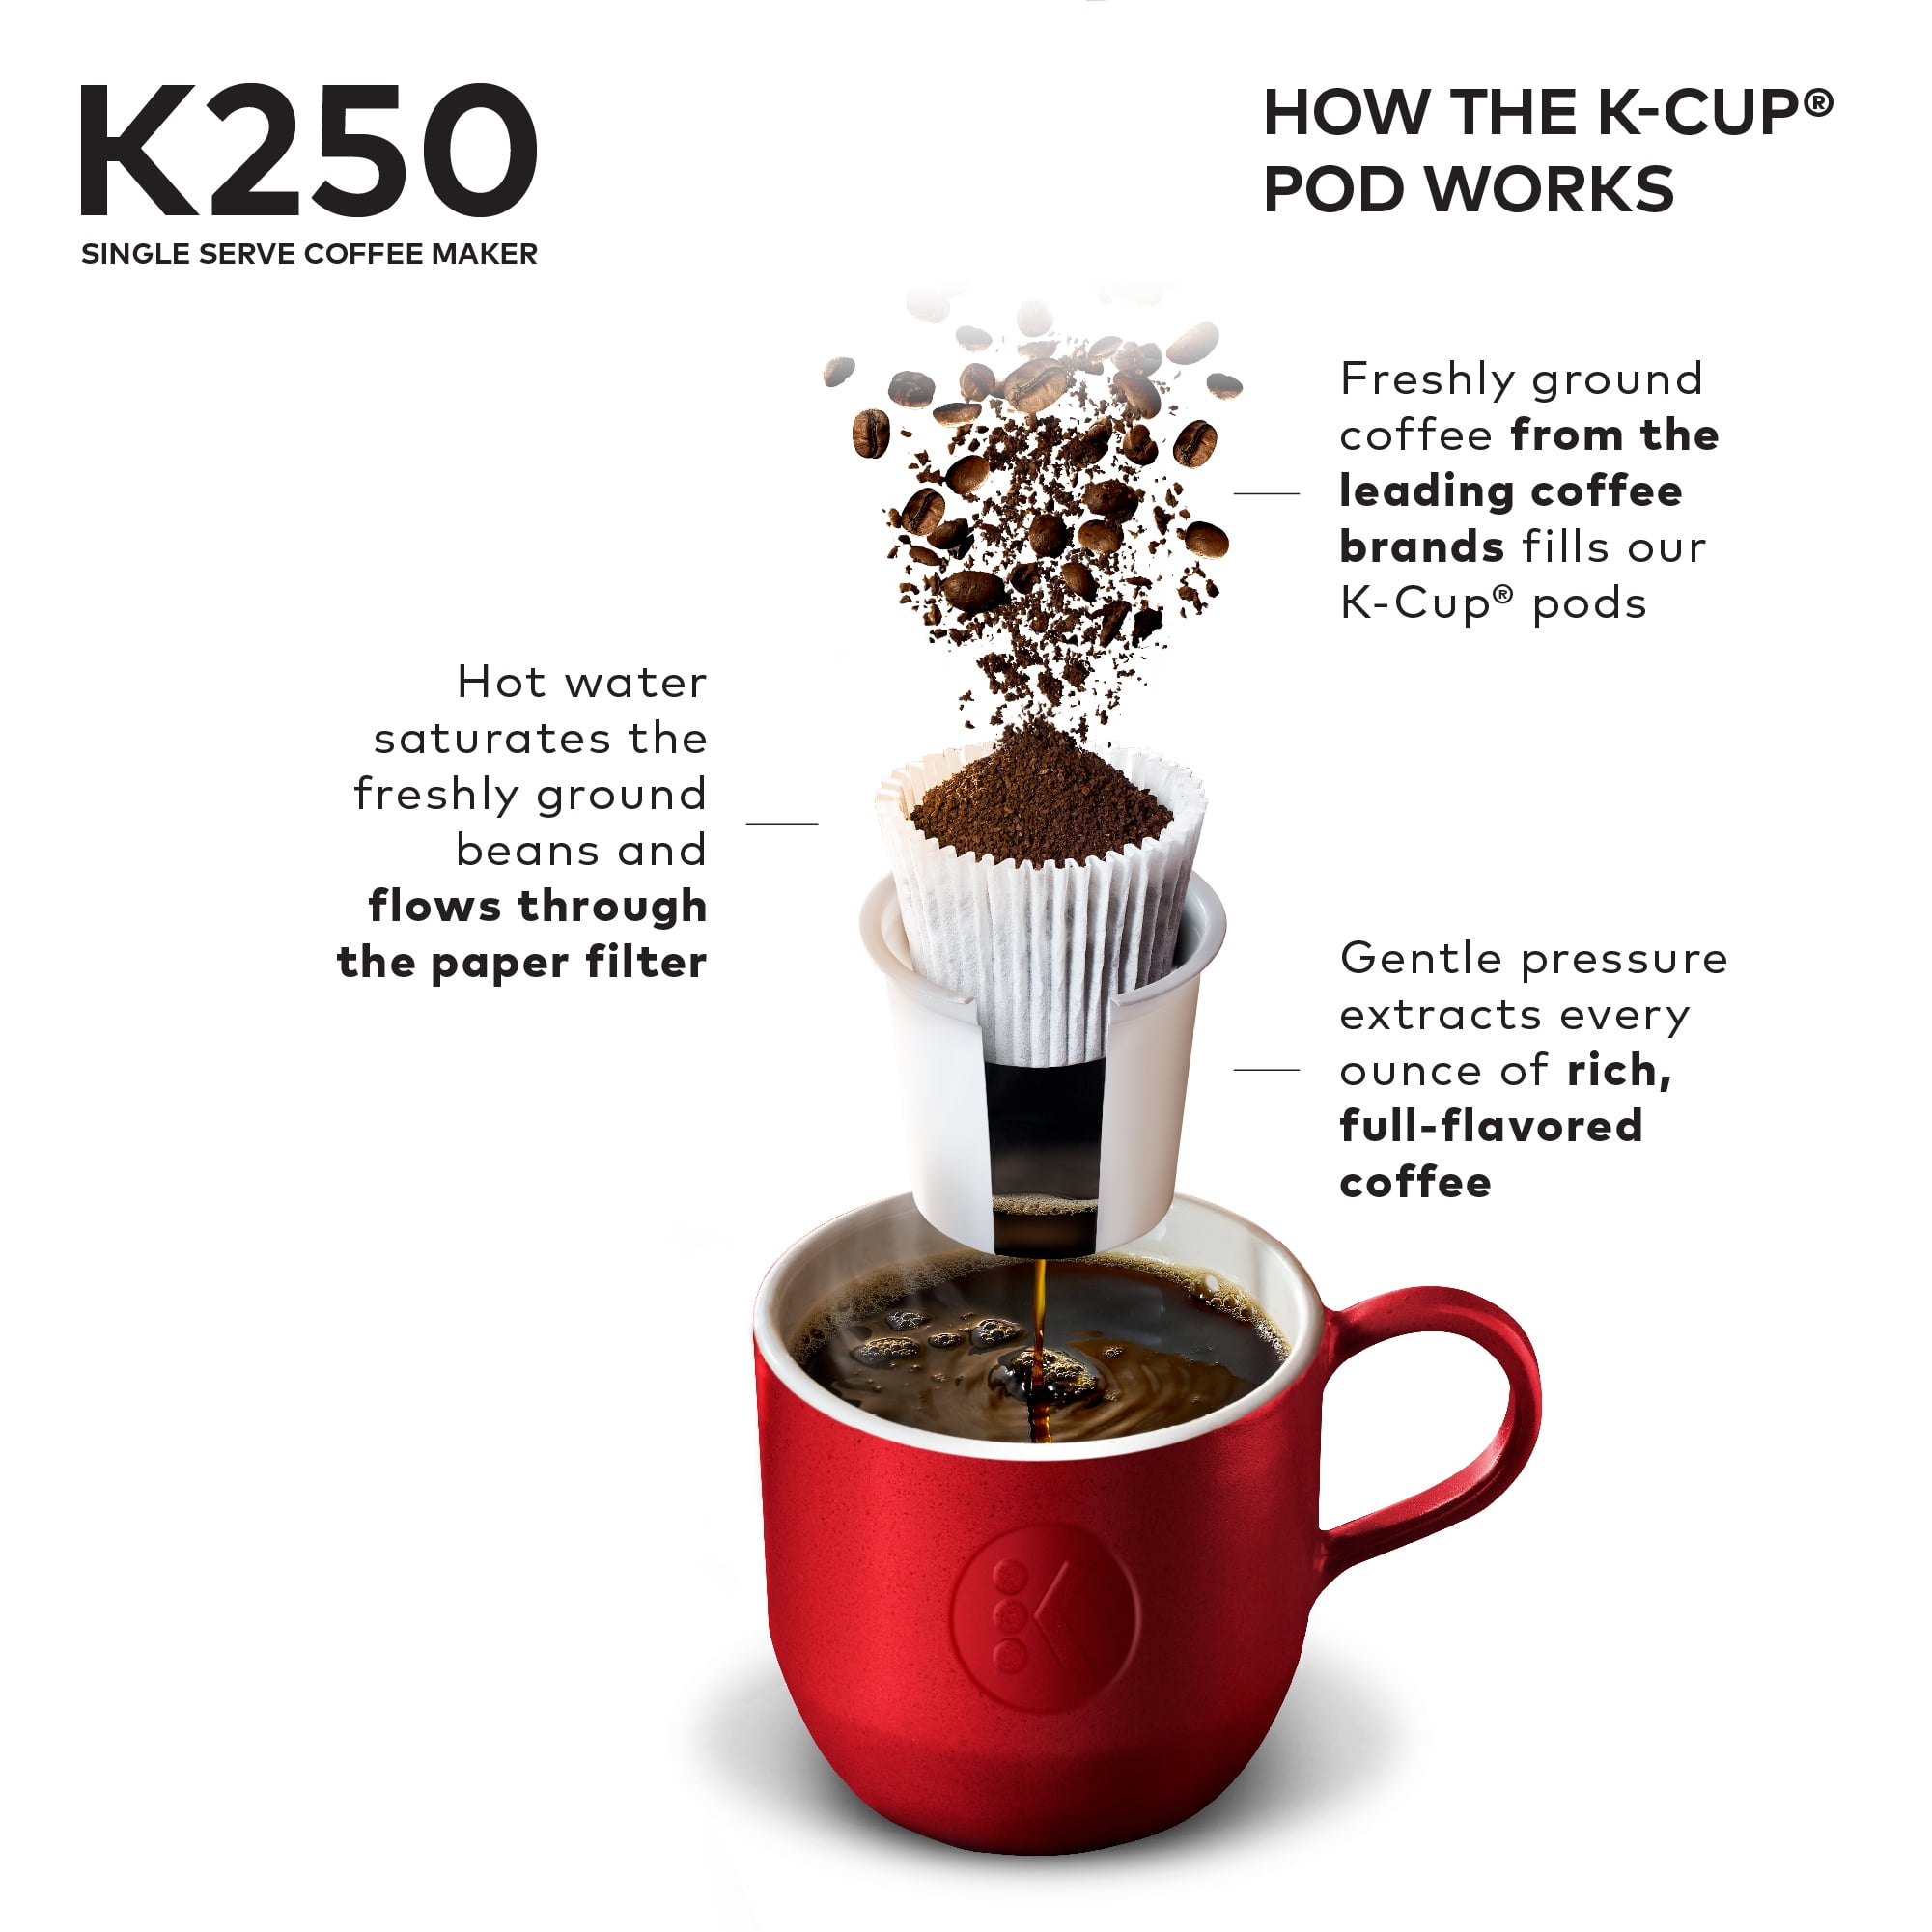 Keurig K250 2.0 Coffee Maker (Turquoise)